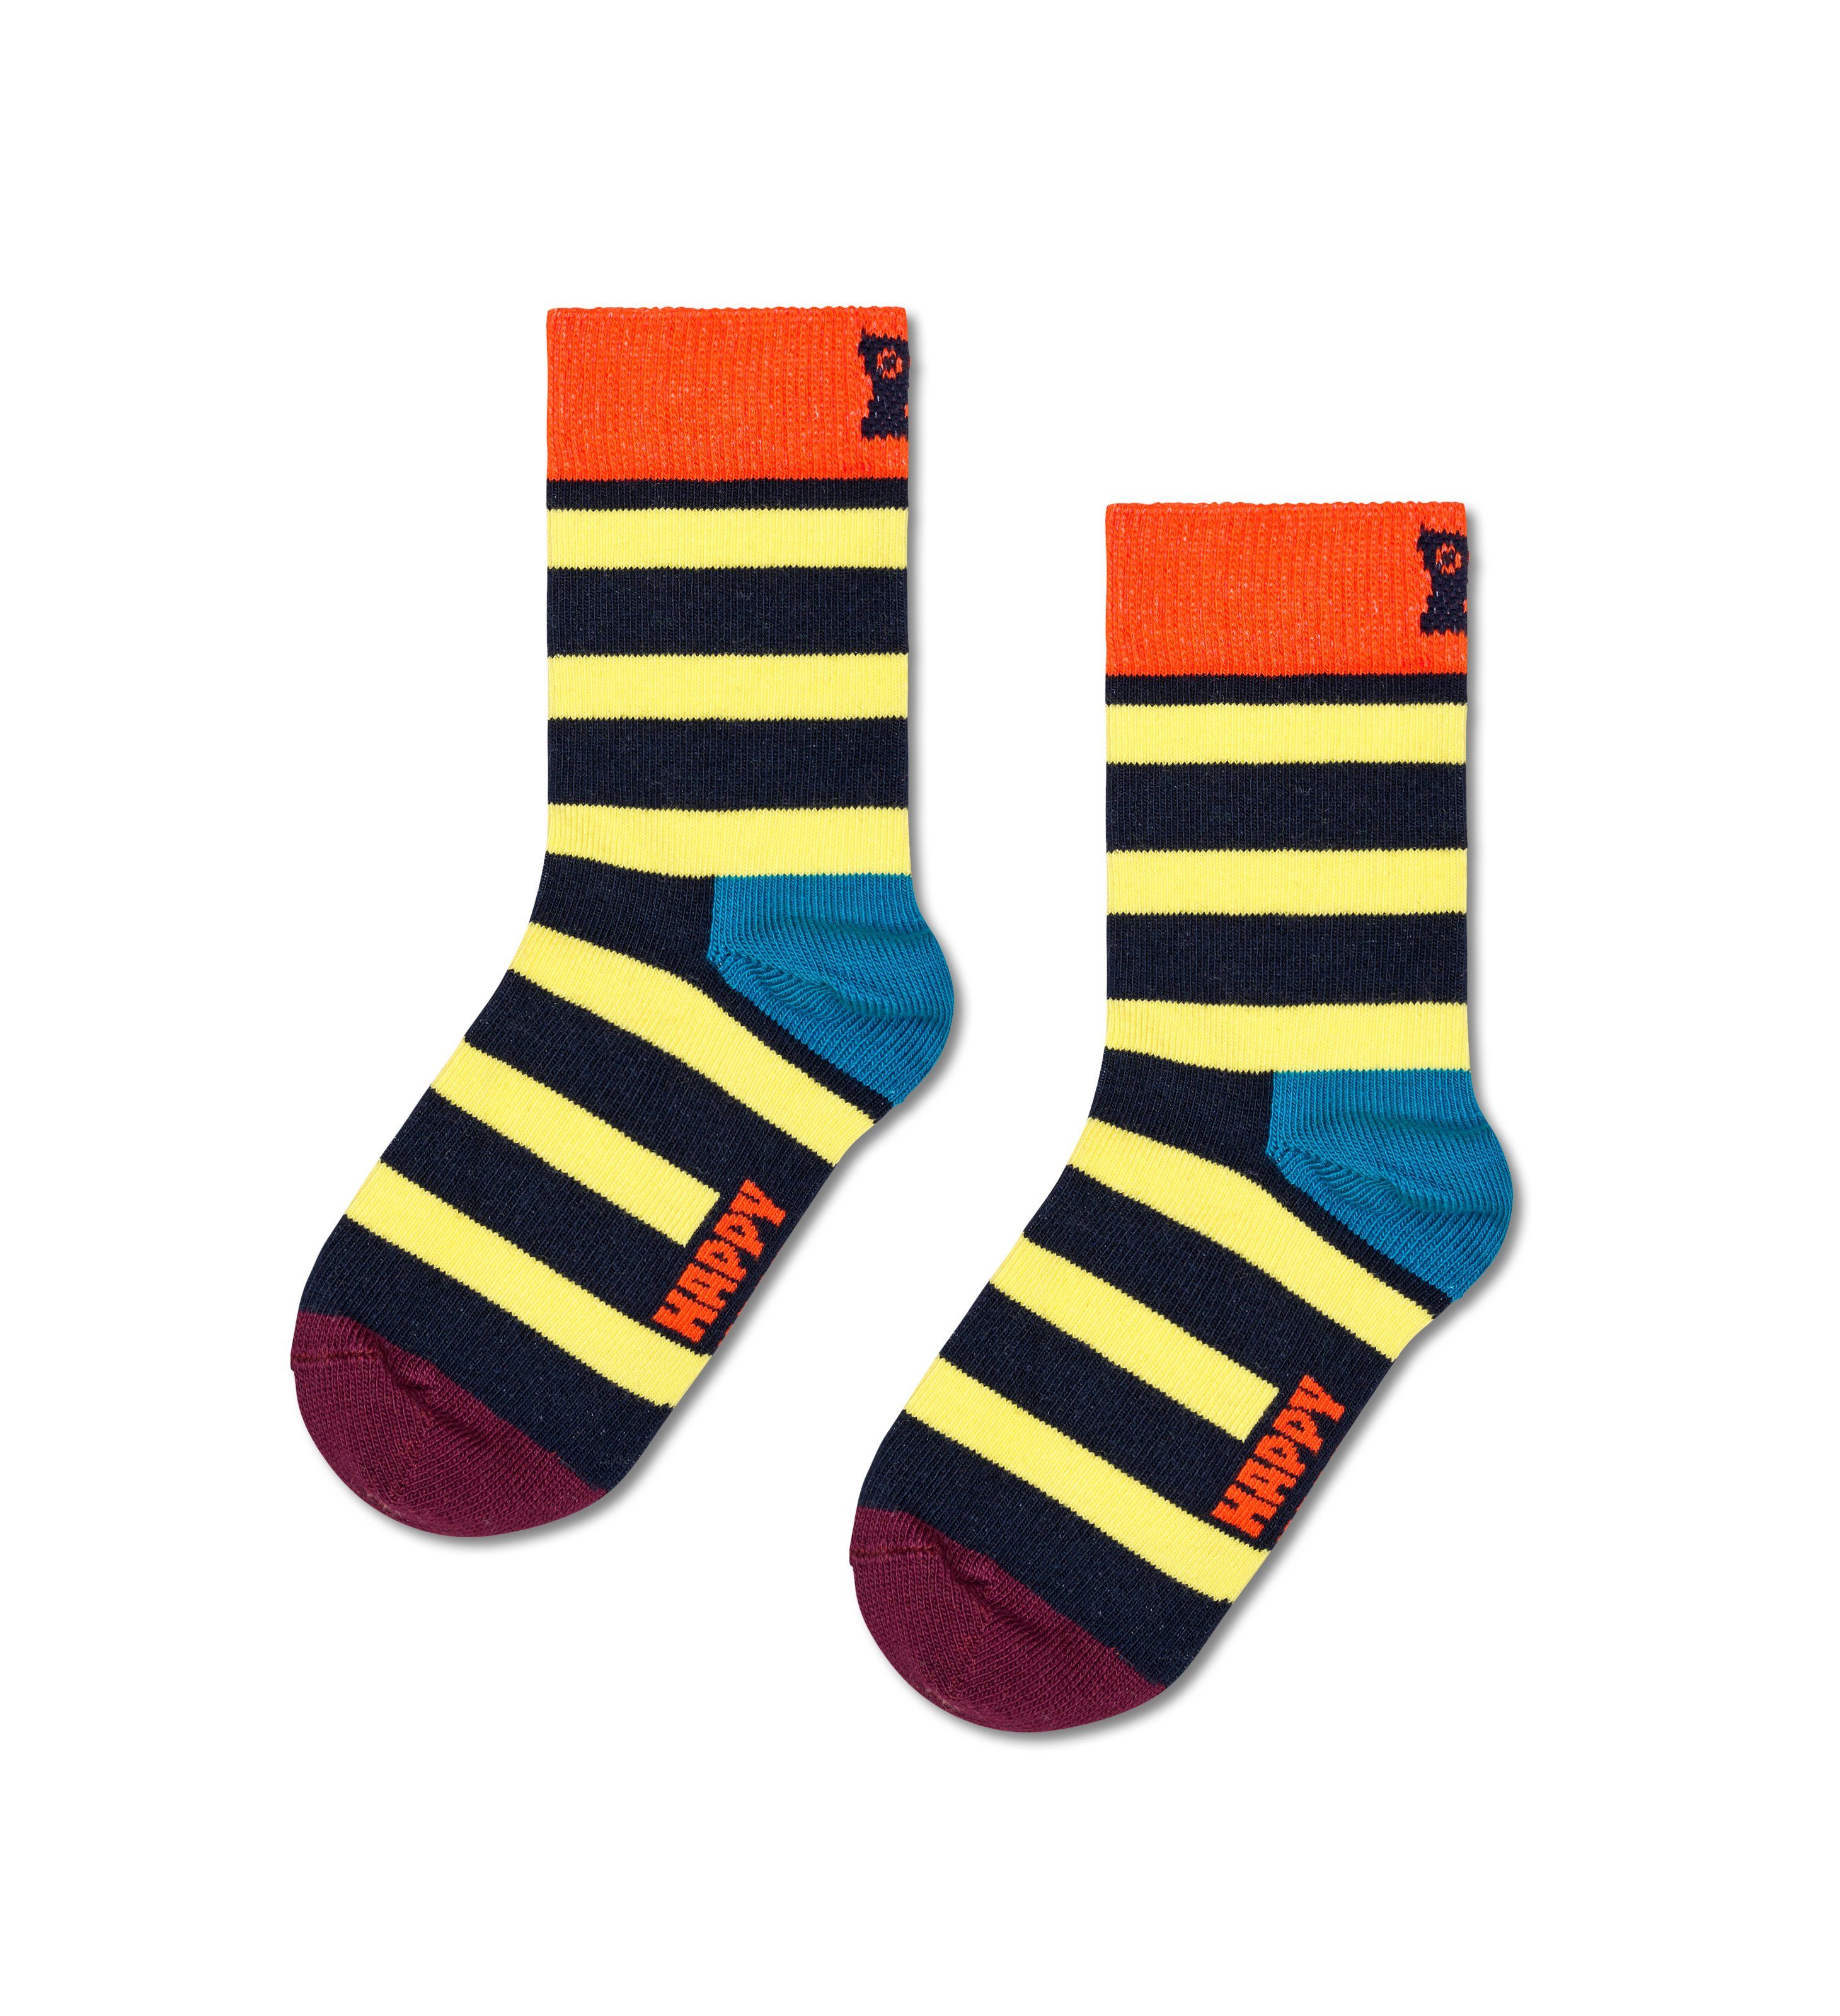 Happy Socks Socken (3-Paar) Peek-A-Boo Peekaboo Gift Set